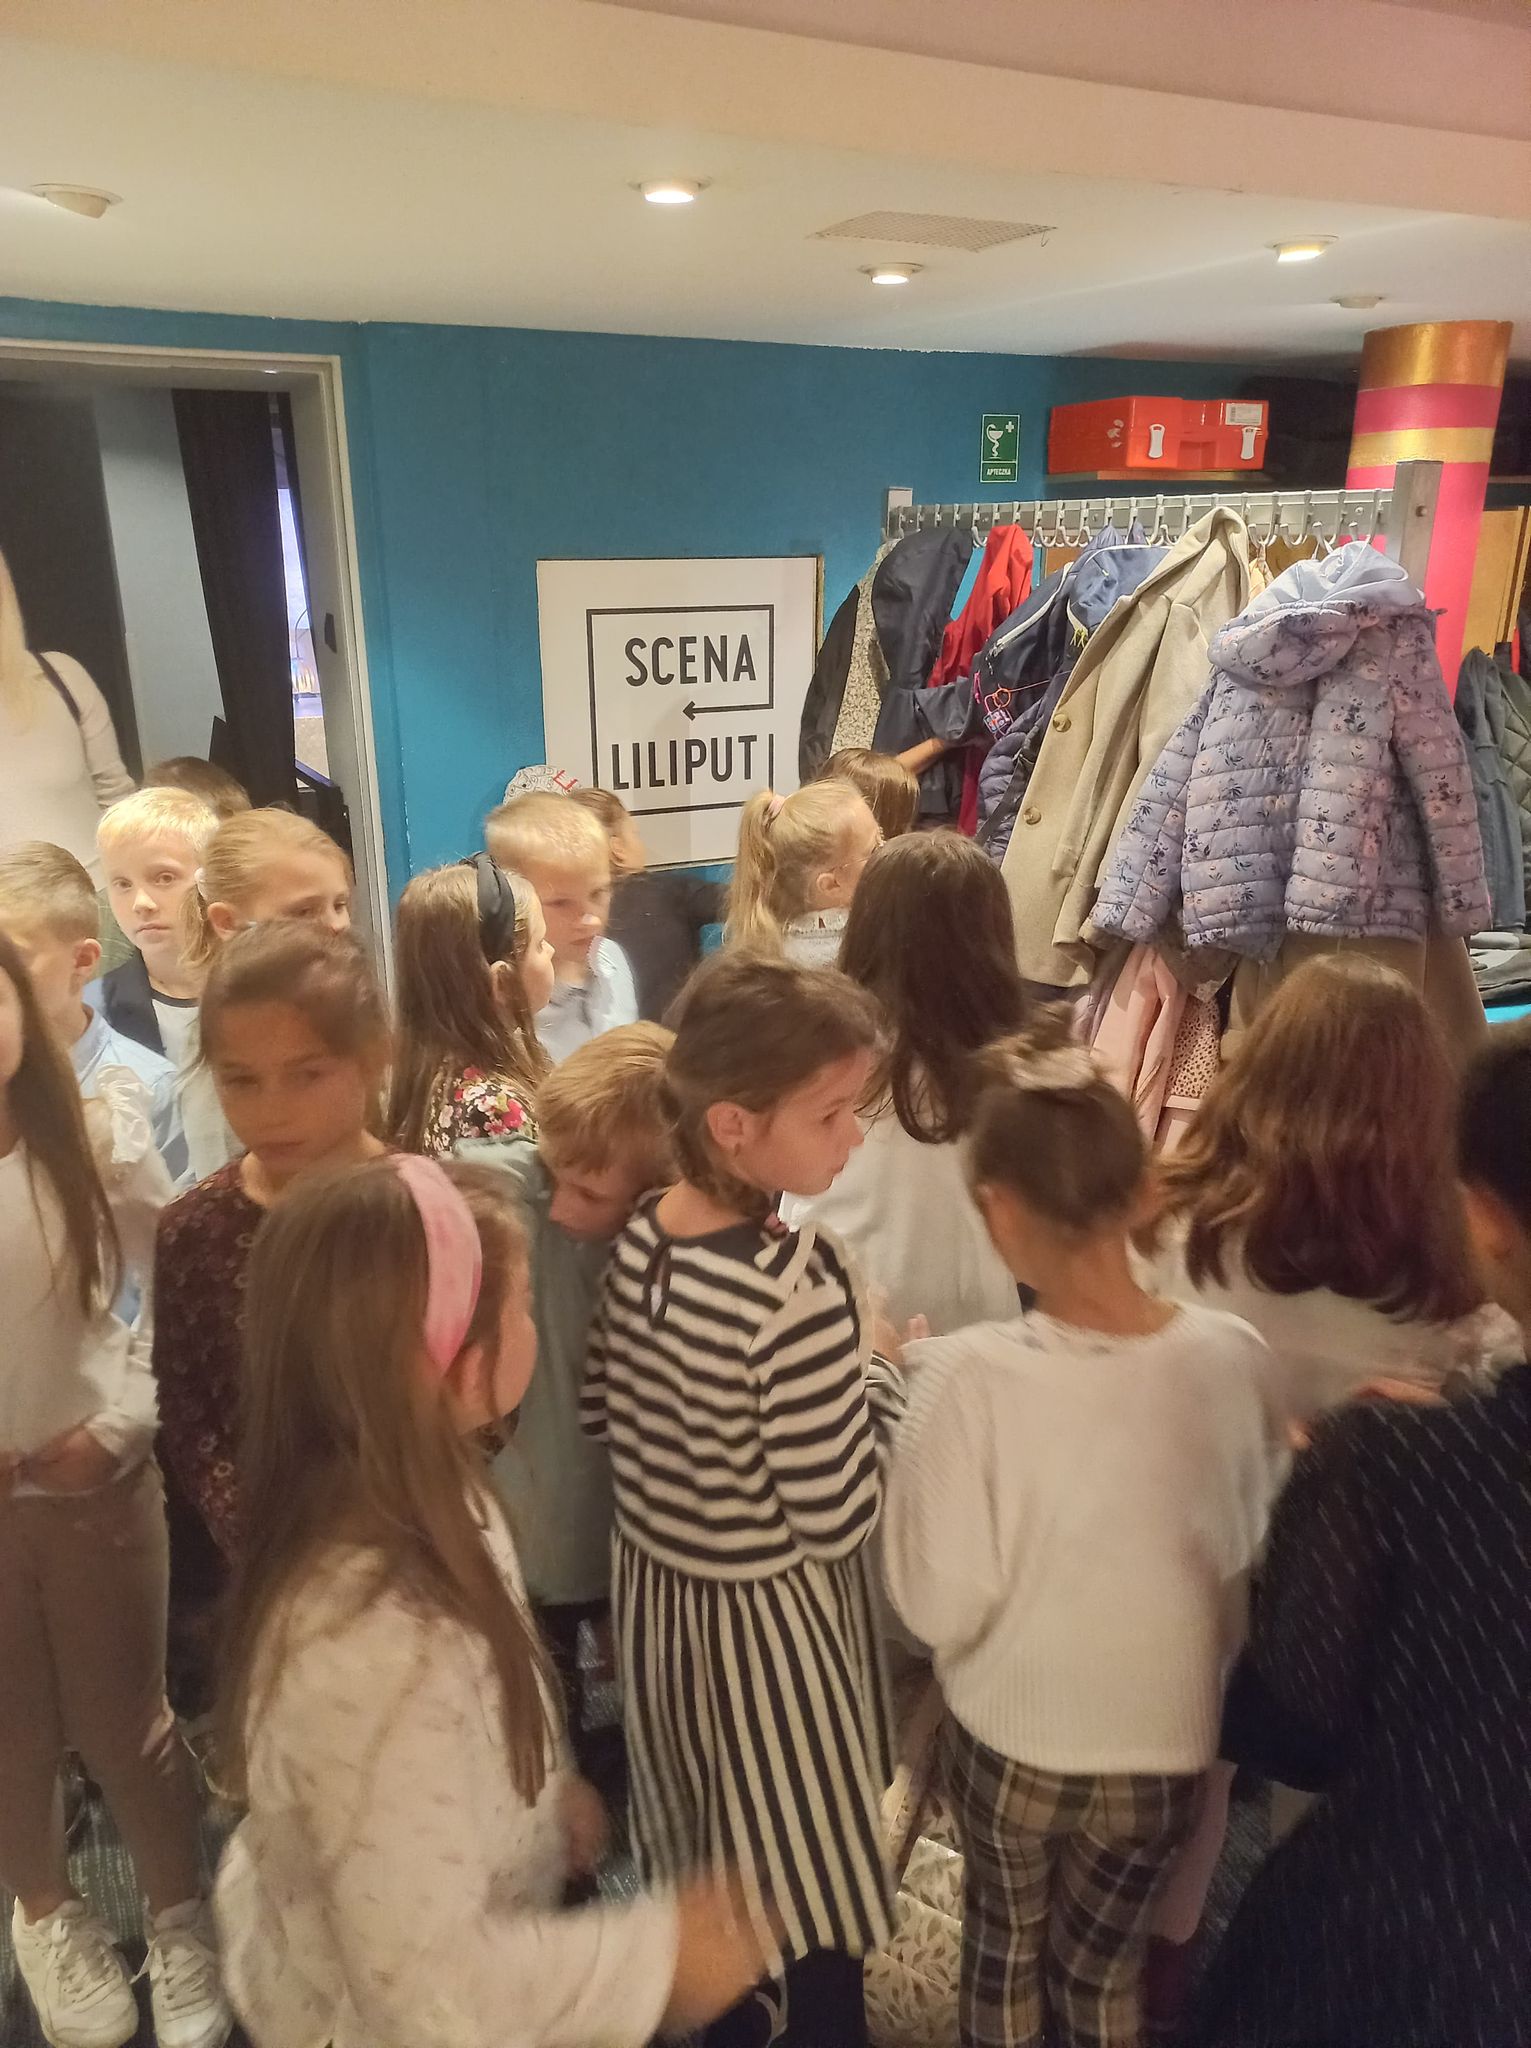 Dzieci stojący w pomieszczeniu z wieszakiem z kurtkami